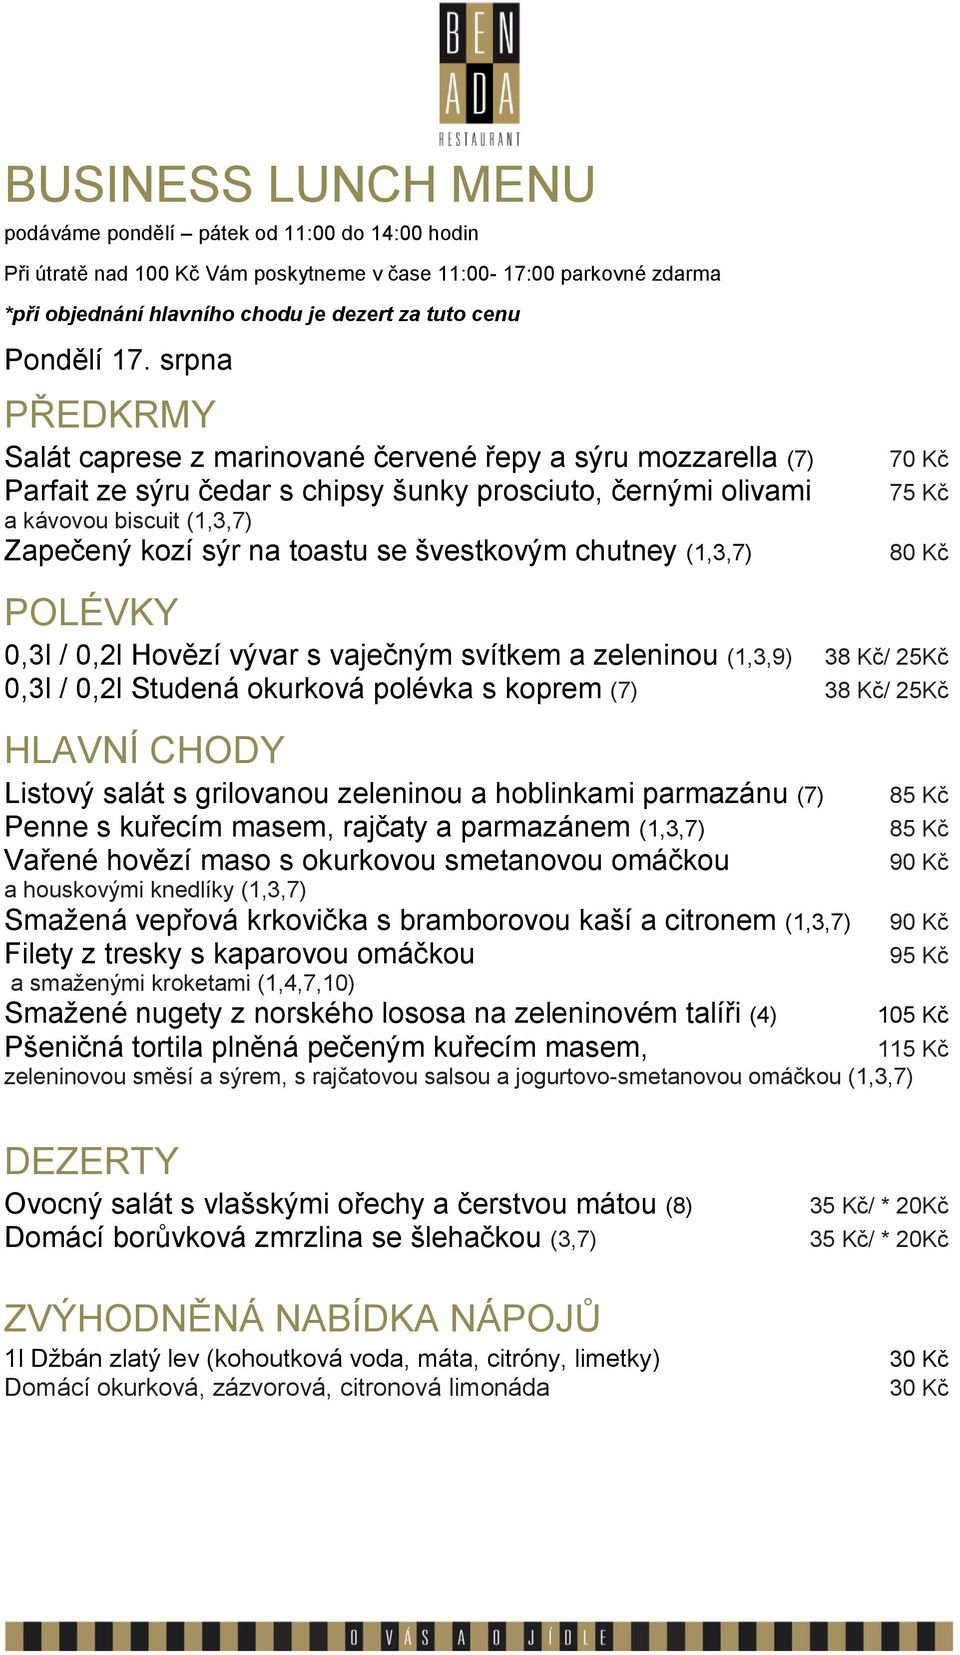 Kč/ 25Kč Listový salát s grilovanou zeleninou a hoblinkami parmazánu (7) Penne s kuřecím masem, rajčaty a parmazánem (1,3,7) Vařené